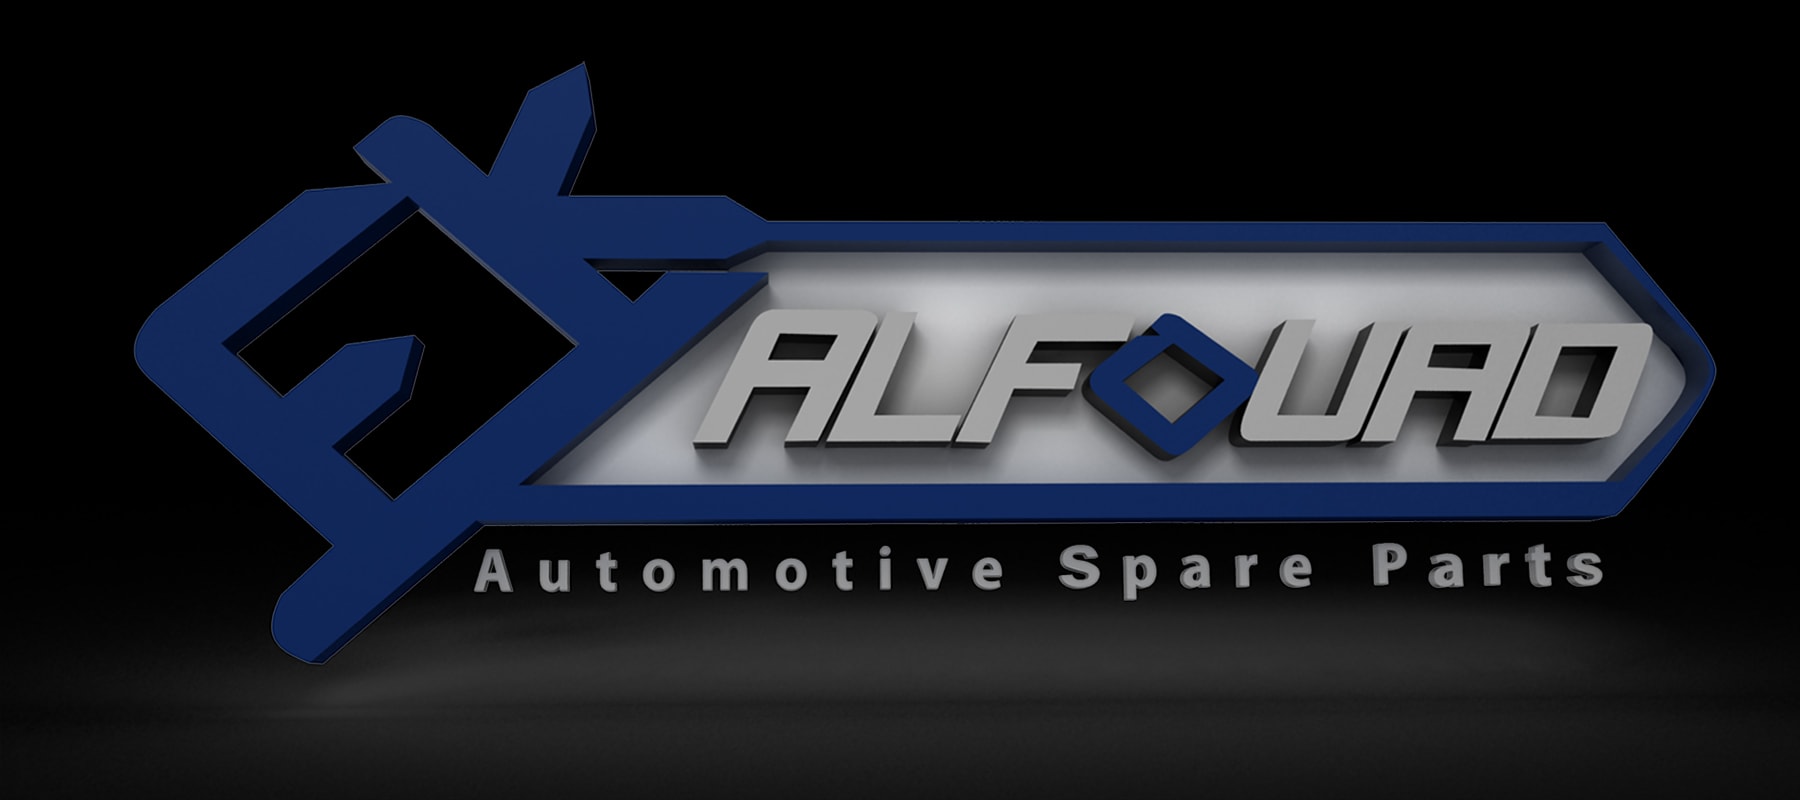 Alfouad Automotive Spare Parts